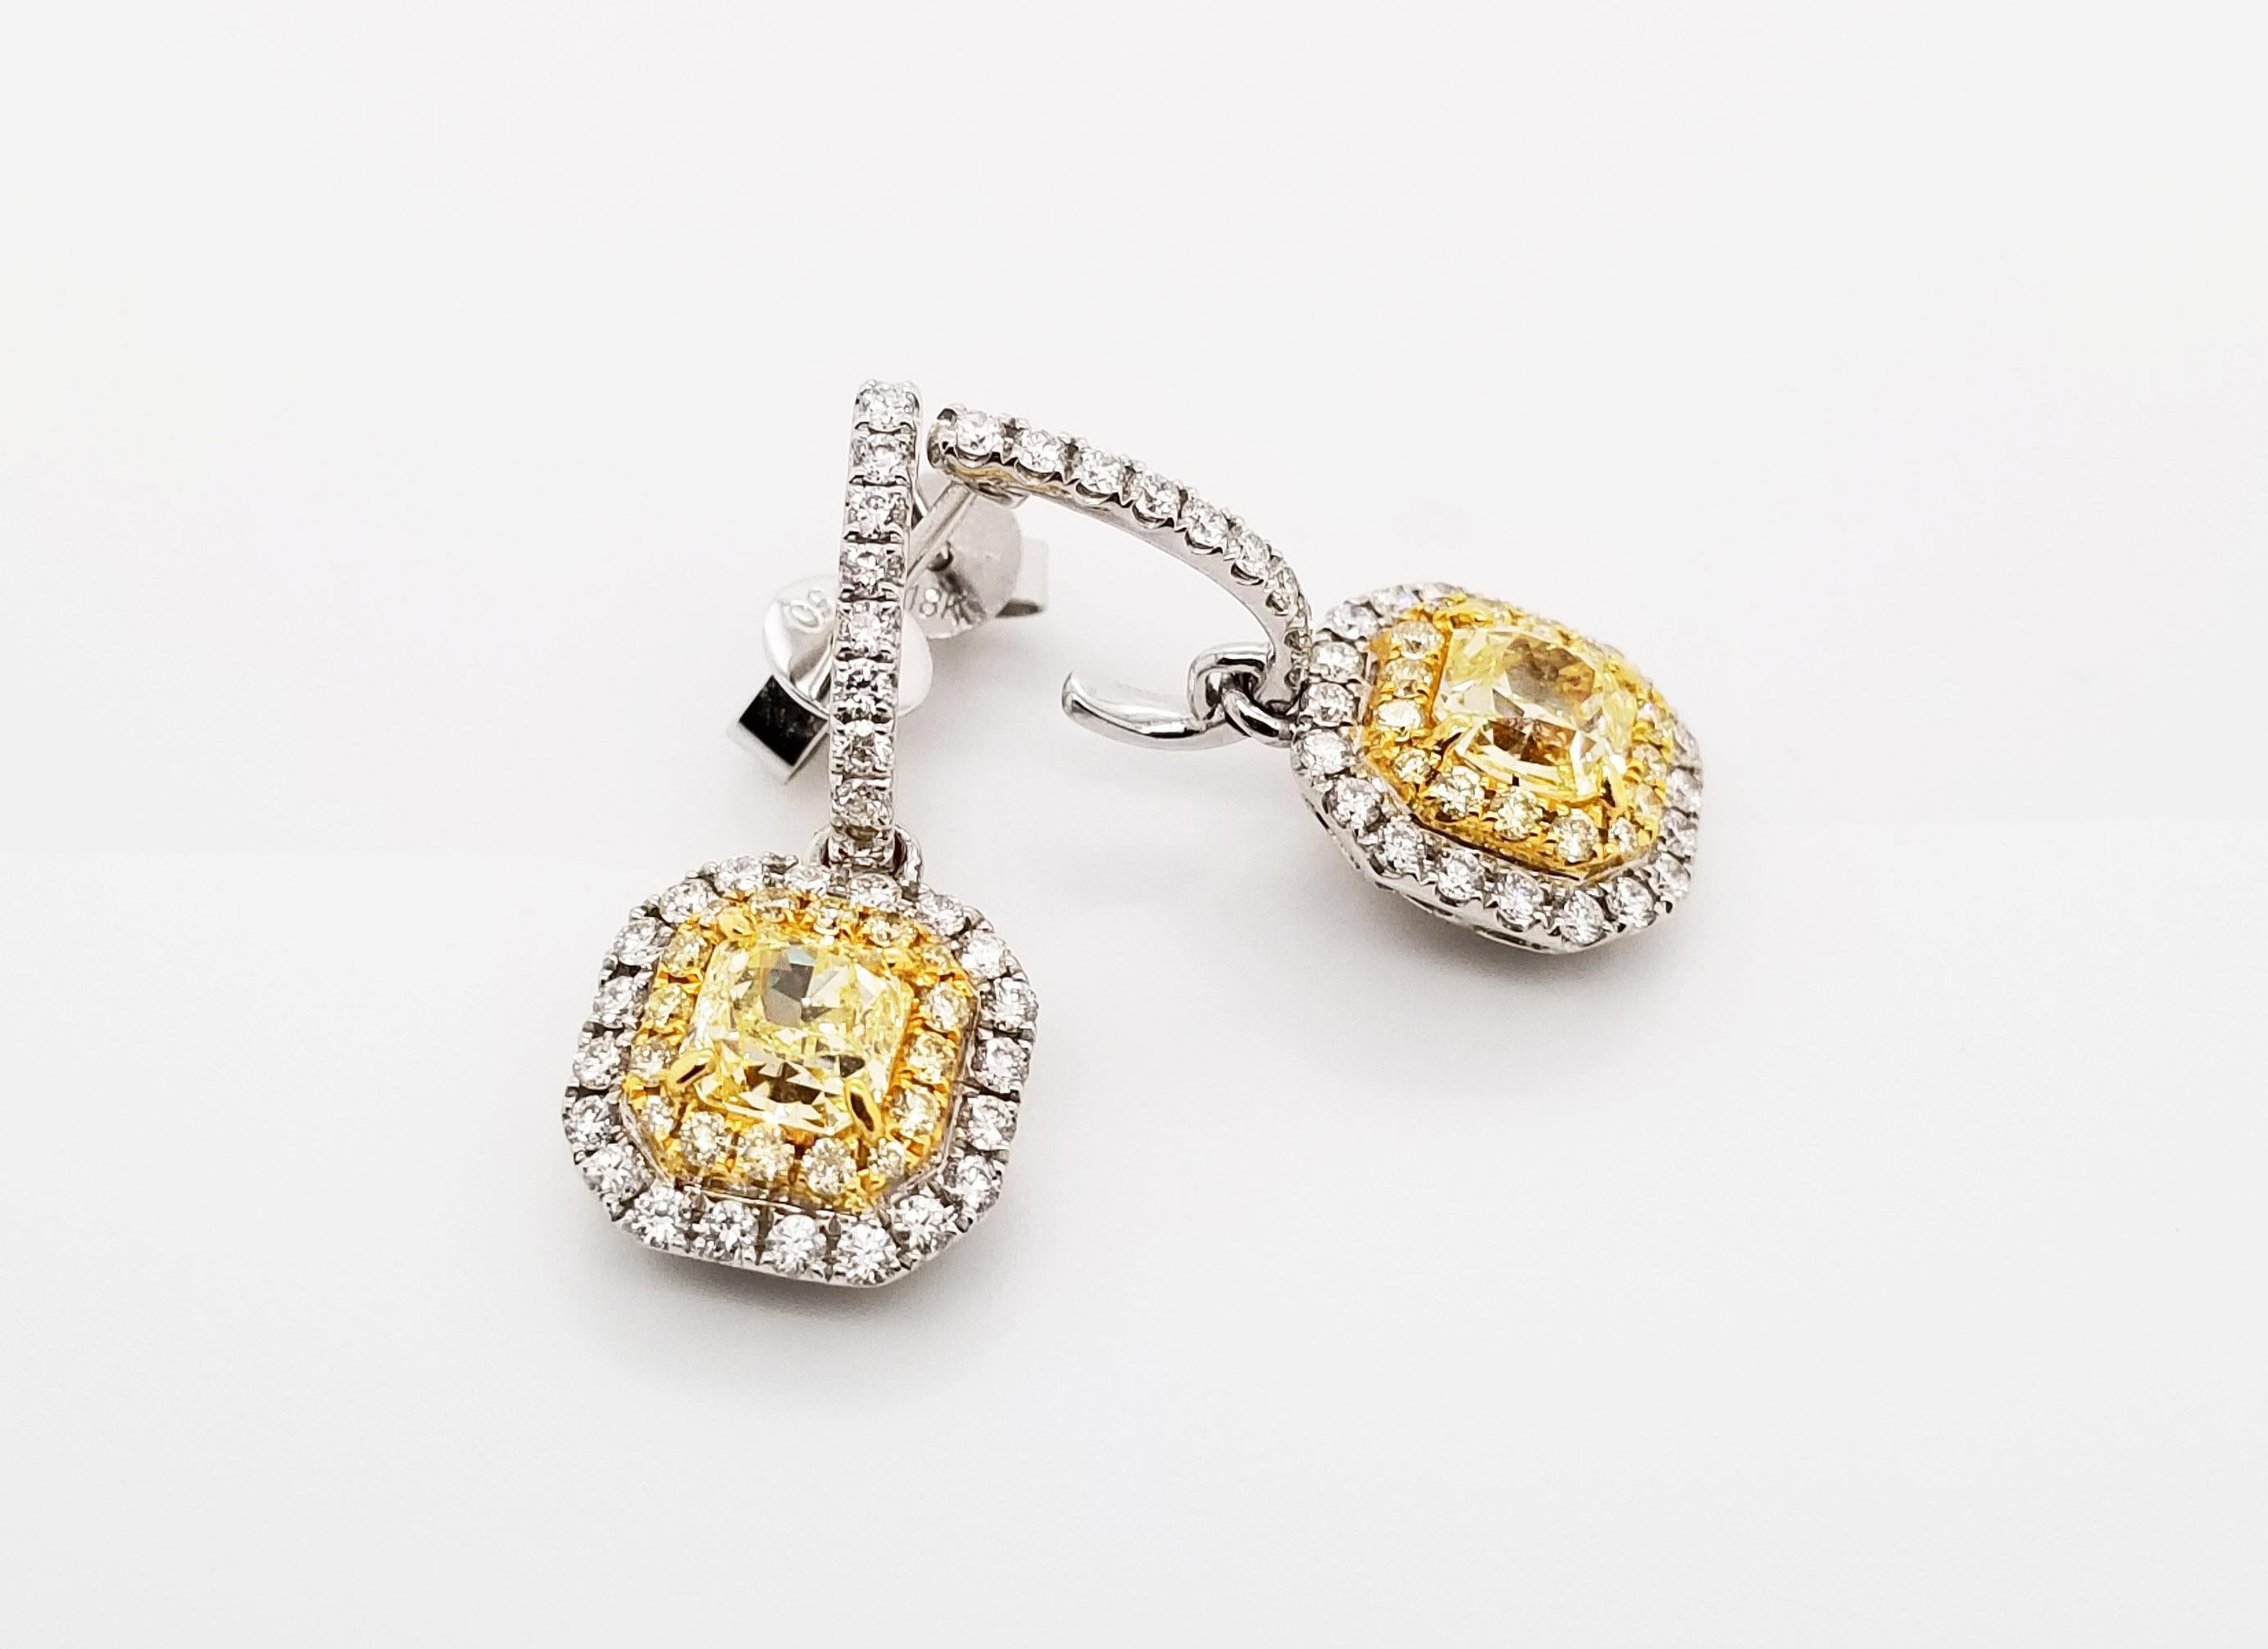 Diese gelben Diamanten im Radiant-Schliff aus der Couture-Kollektion von Scarselli haben jeweils 0,61 Karat in der Reinheit SI2-SI1. Die gelben Diamanten sind einfach schön in einem 18 Karat Gelbgold flankiert von 0,24 Karat gelben Diamanten